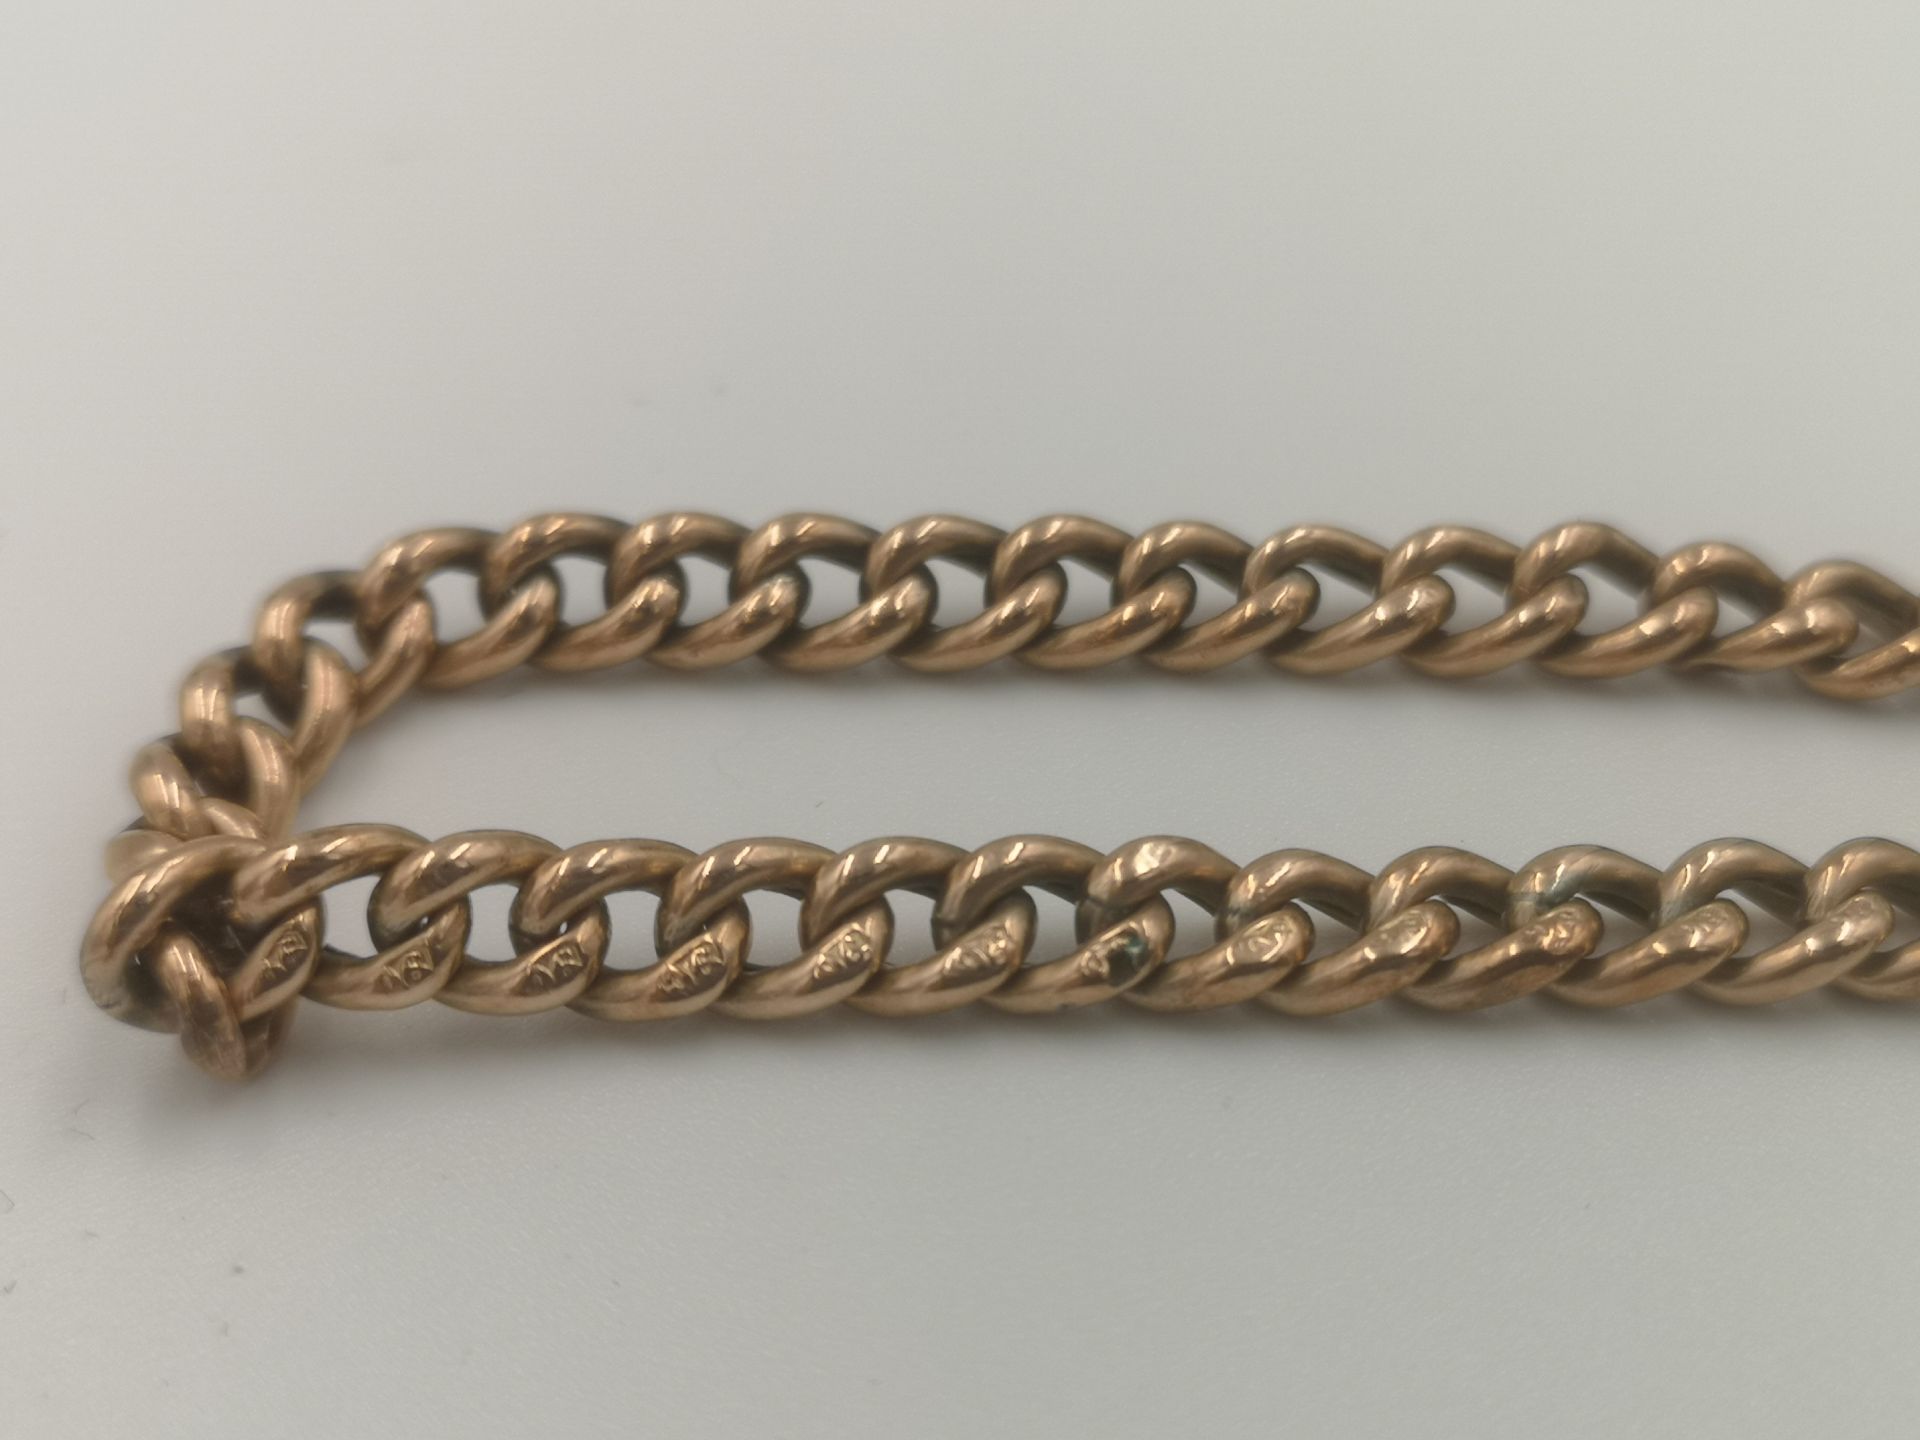 9ct gold curb link bracelet - Image 2 of 4